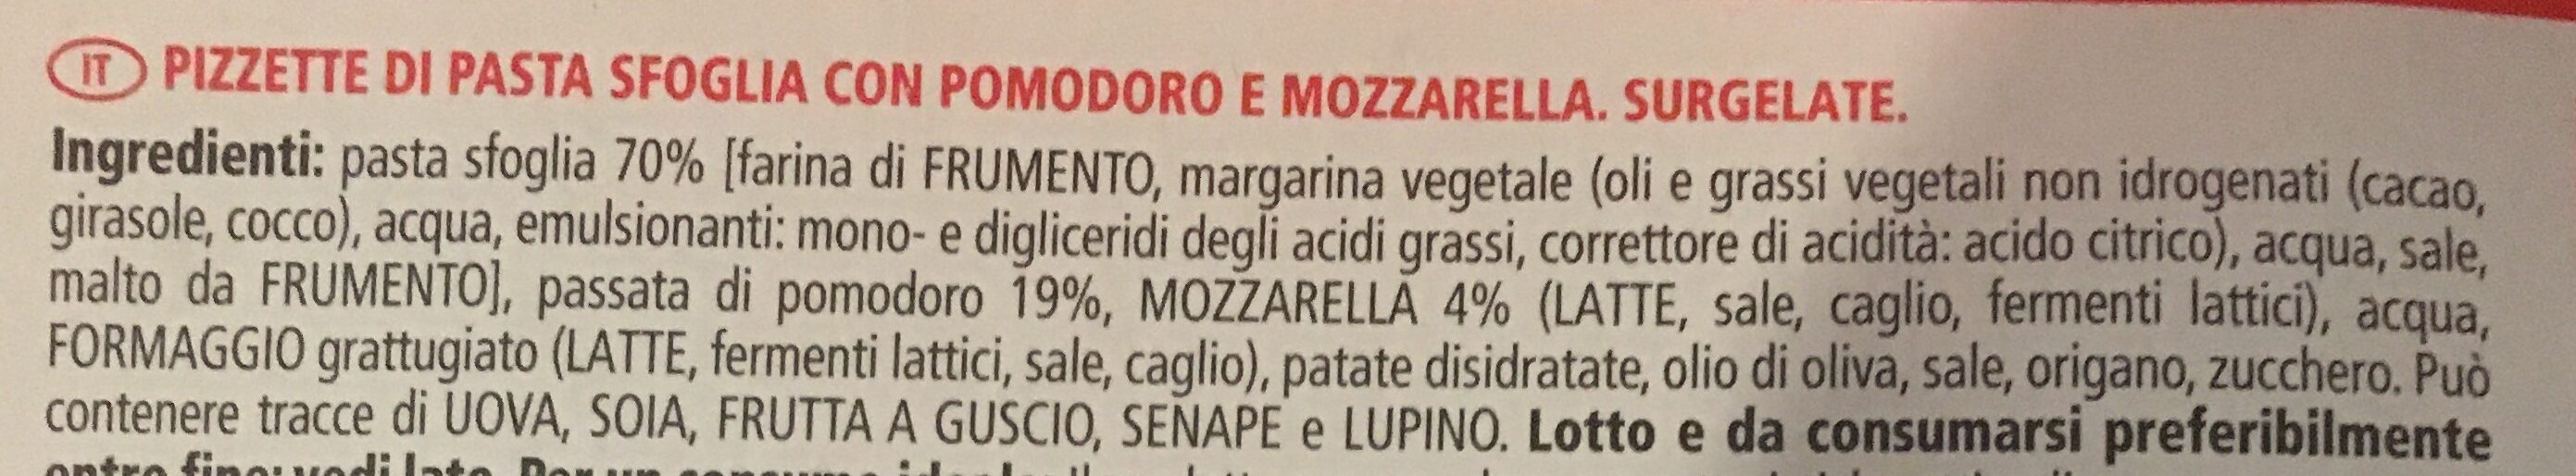 Pizzette pomodoro e mozzarella - Ingredienti